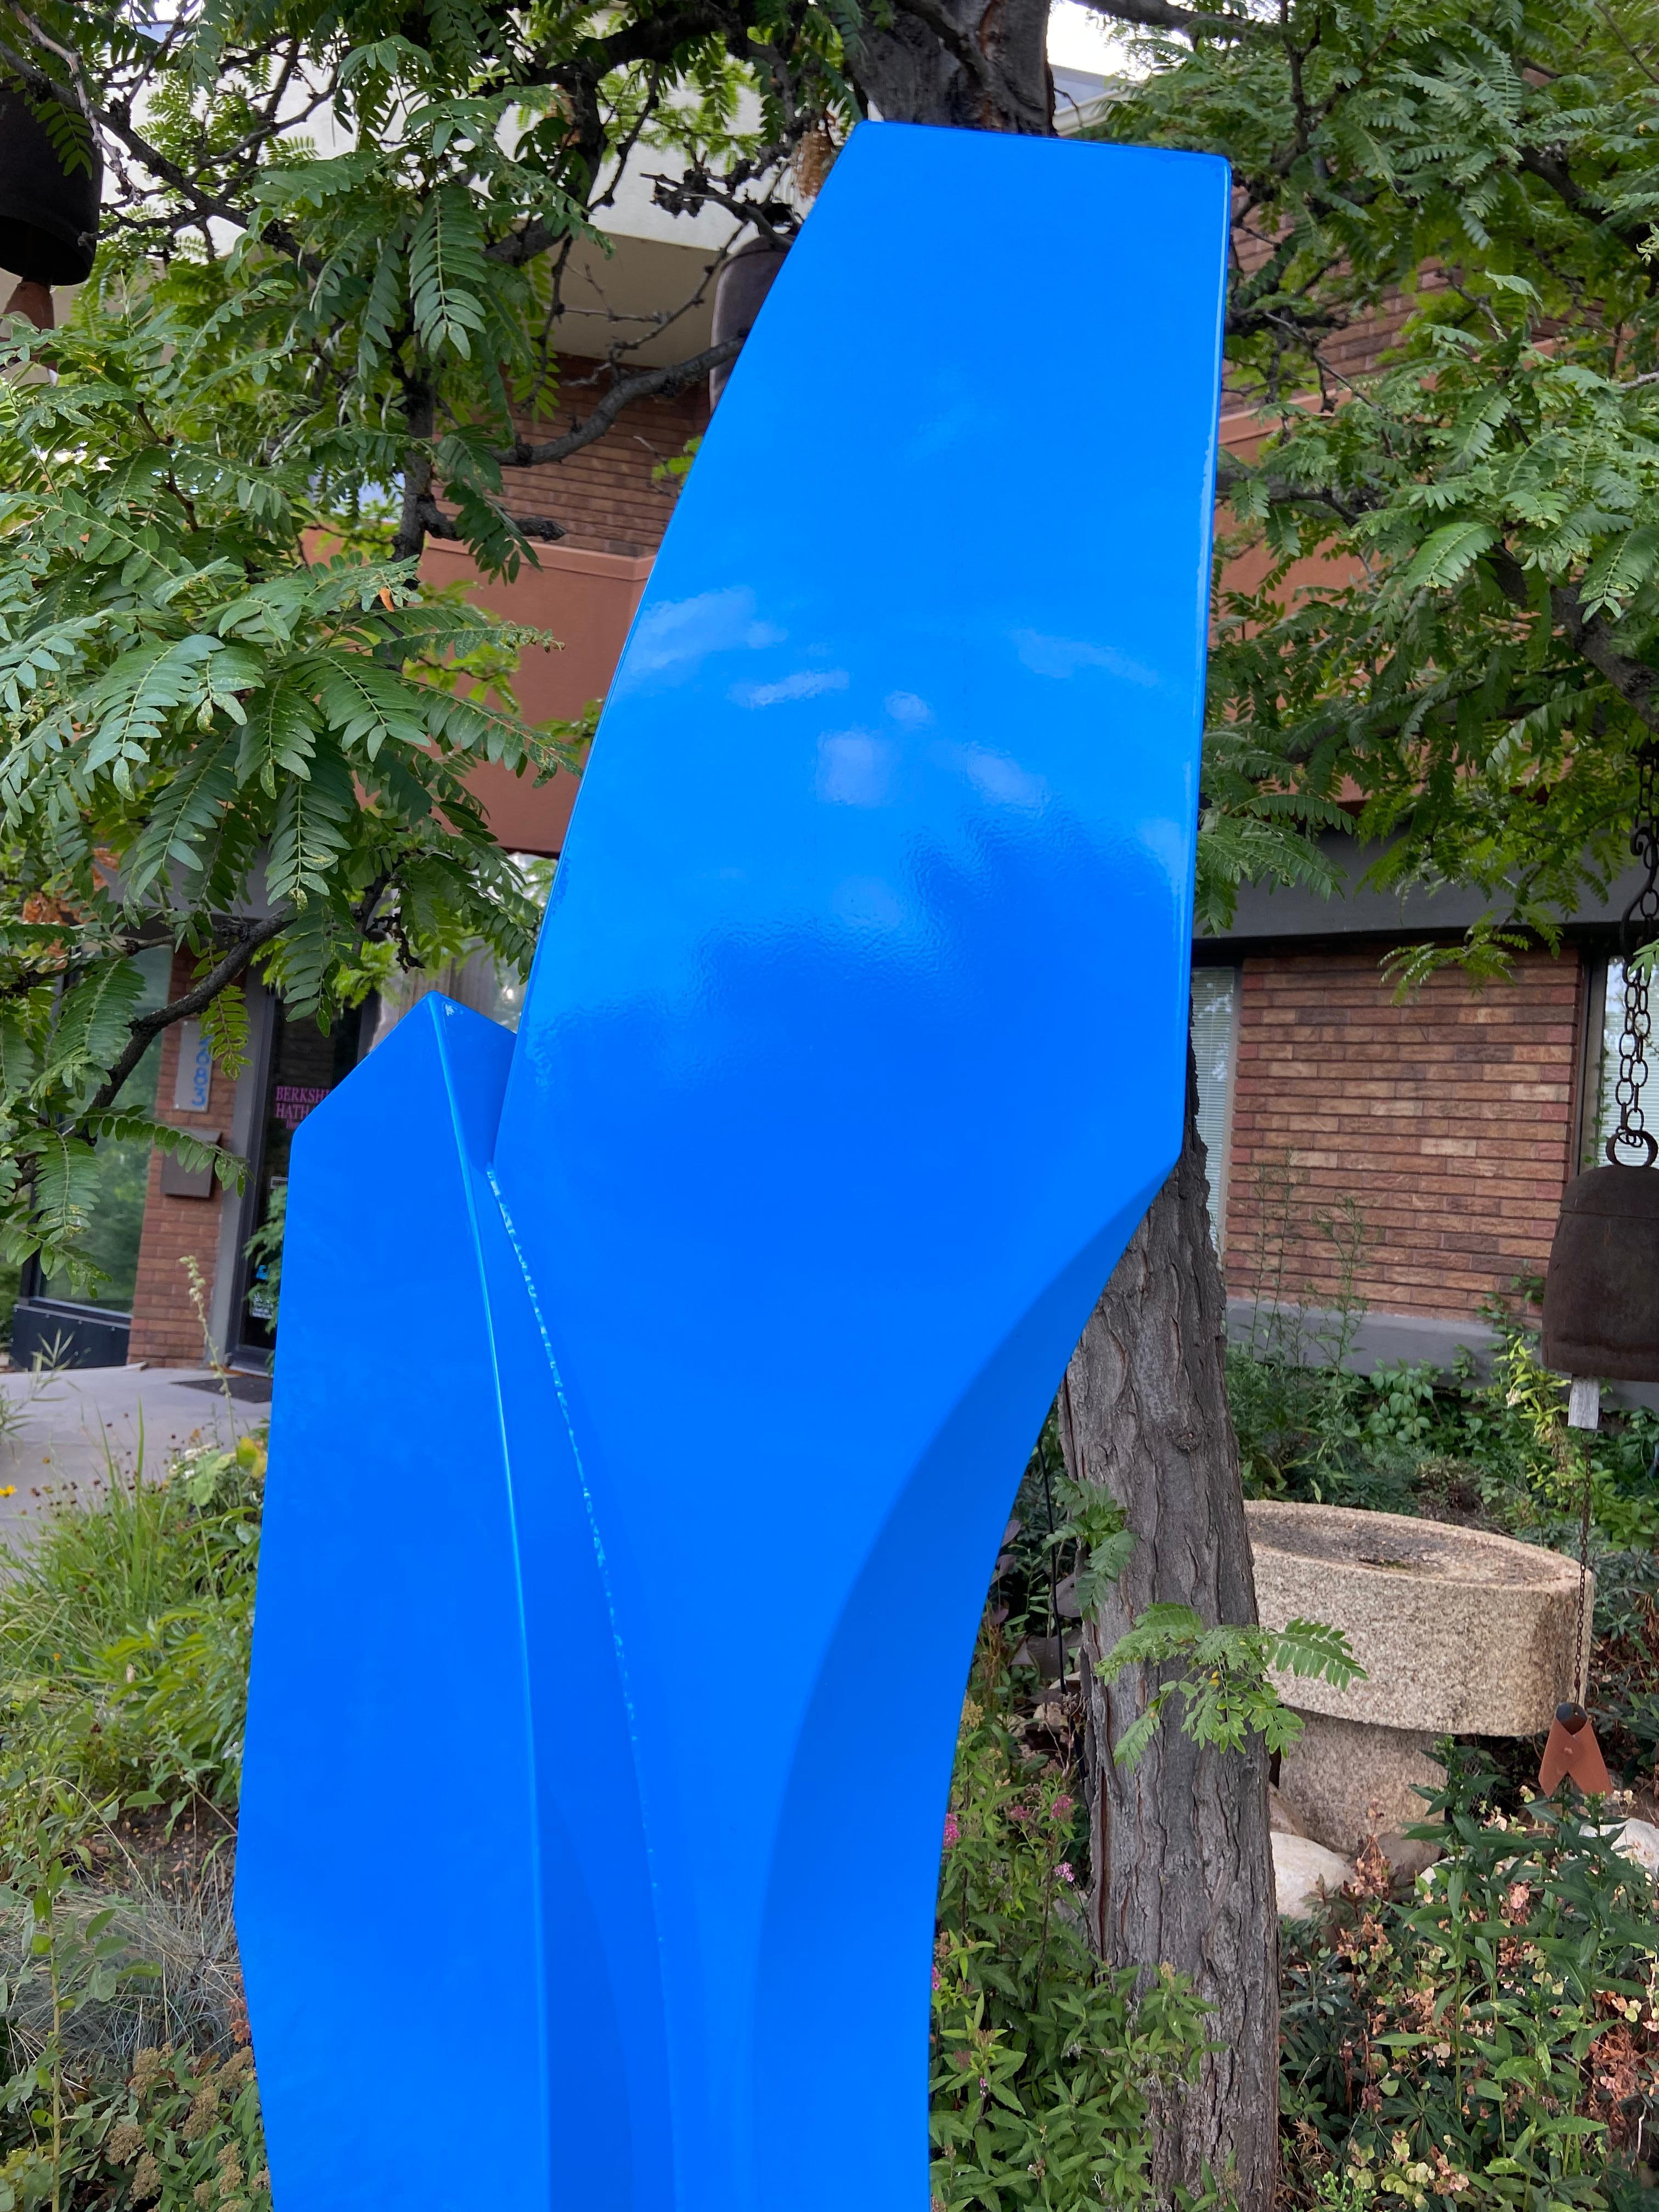 Duet, 6-ft tall sculpture - Contemporary Sculpture by Mark Leichliter